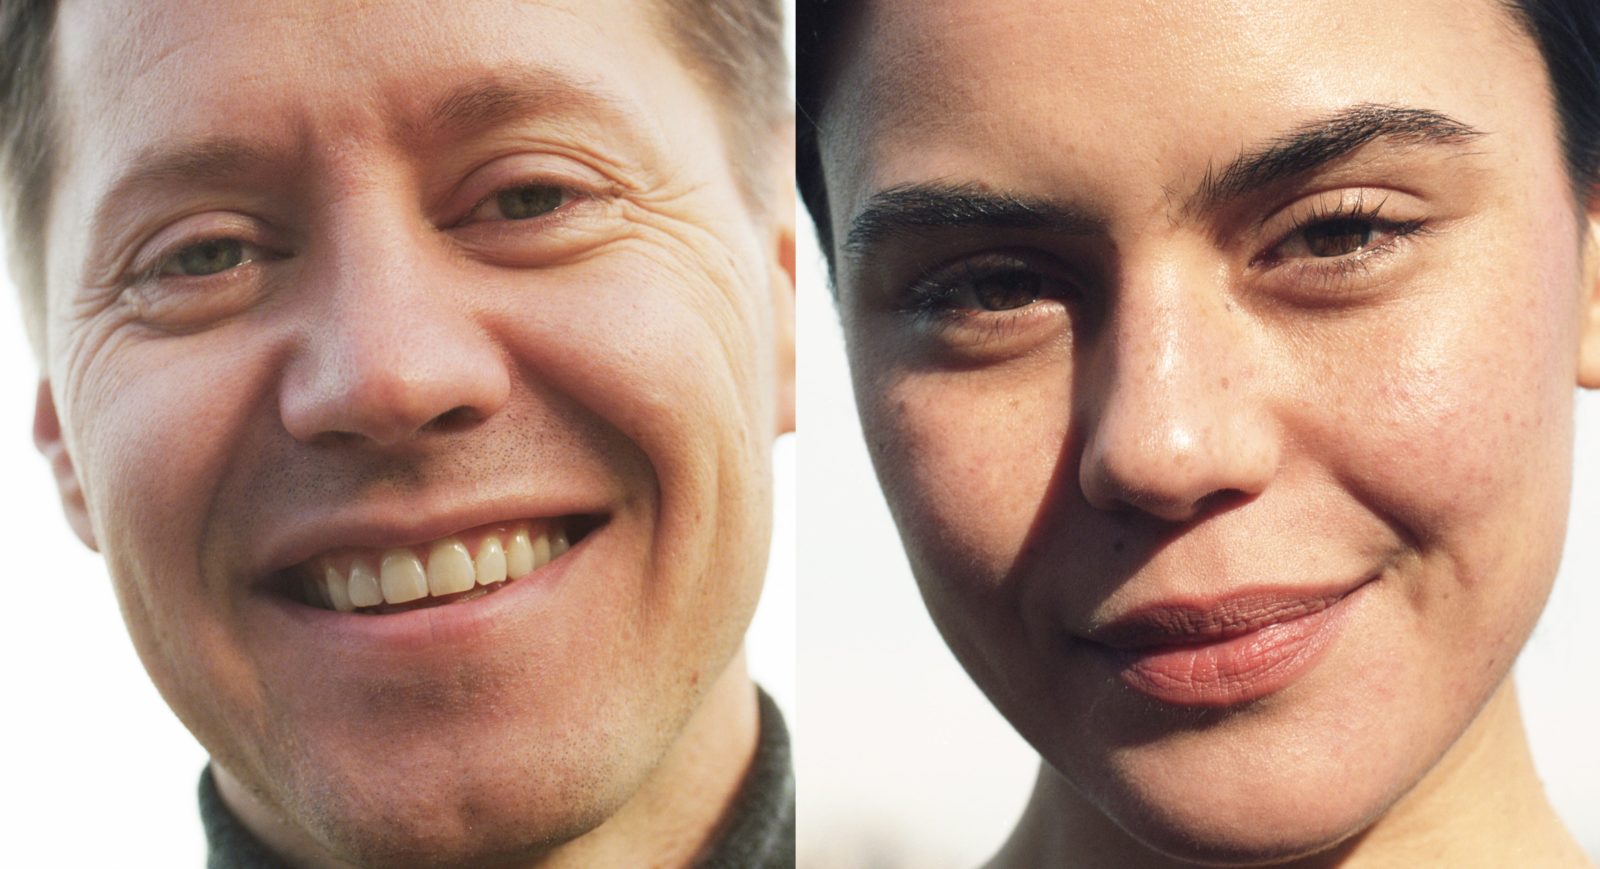 Portrait des artistes Aapo Nikkanen et Léa Domingues qui sourient à la caméra.